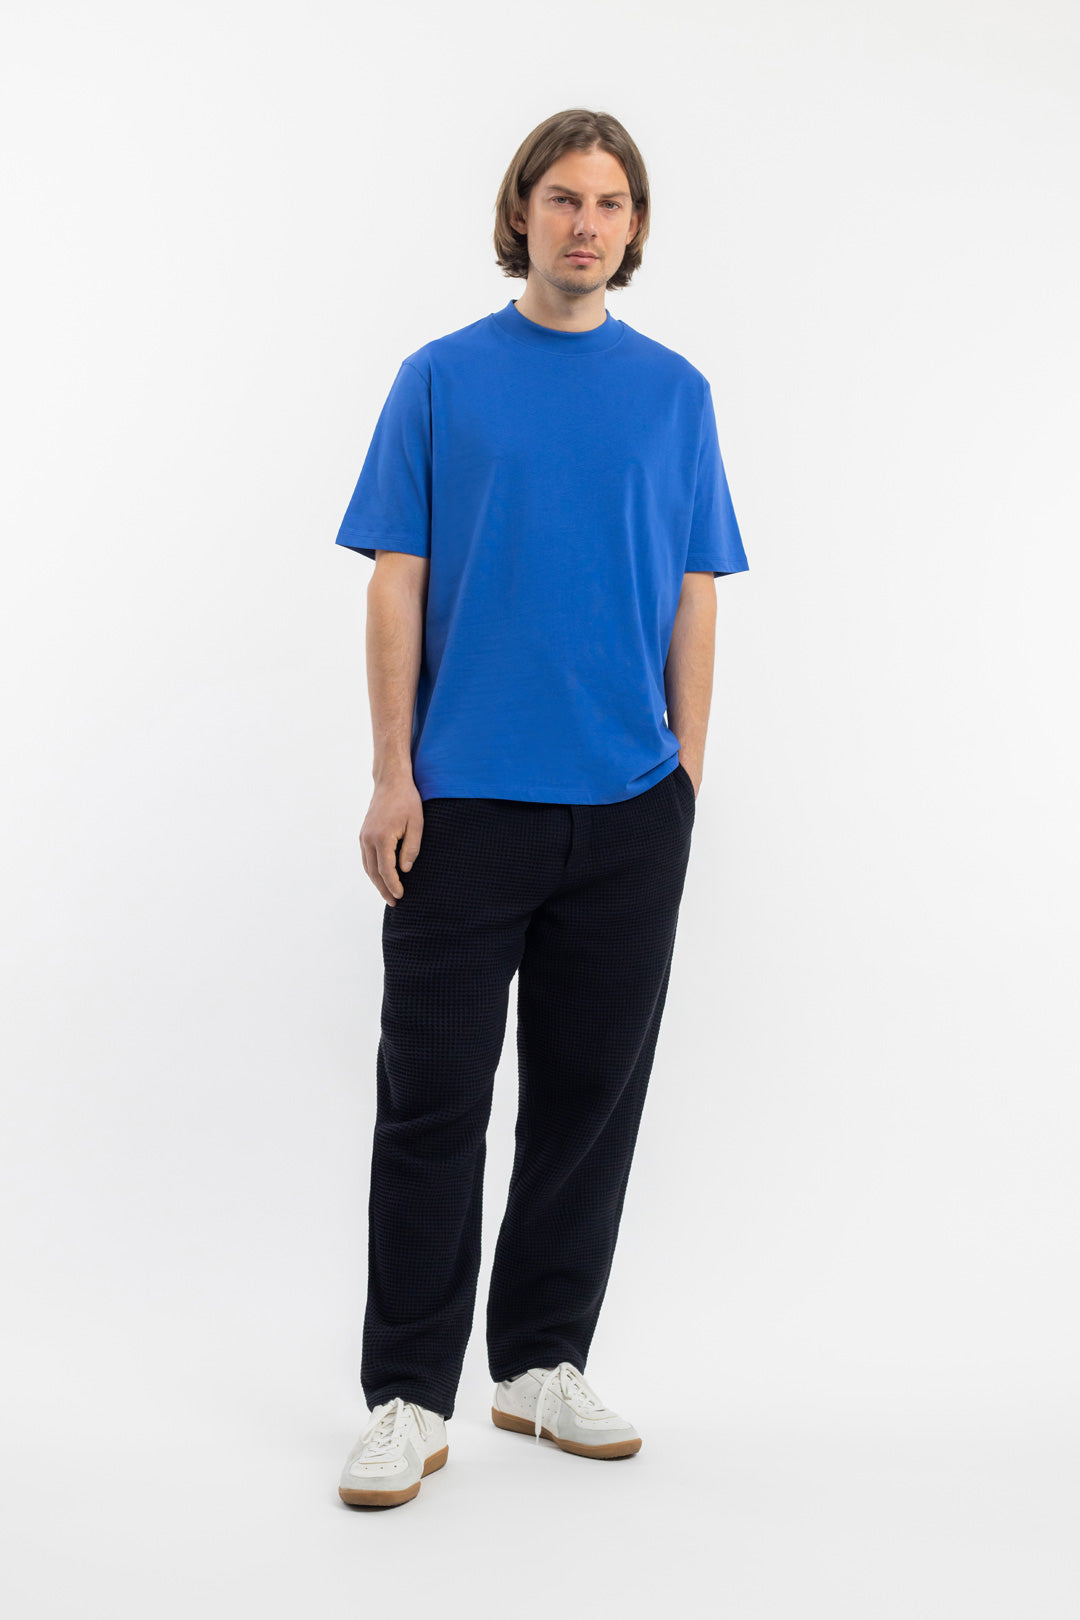 Blaues T-Shirt mit breitem Kragen aus 100% Bio-Baumwolle von Rotholz